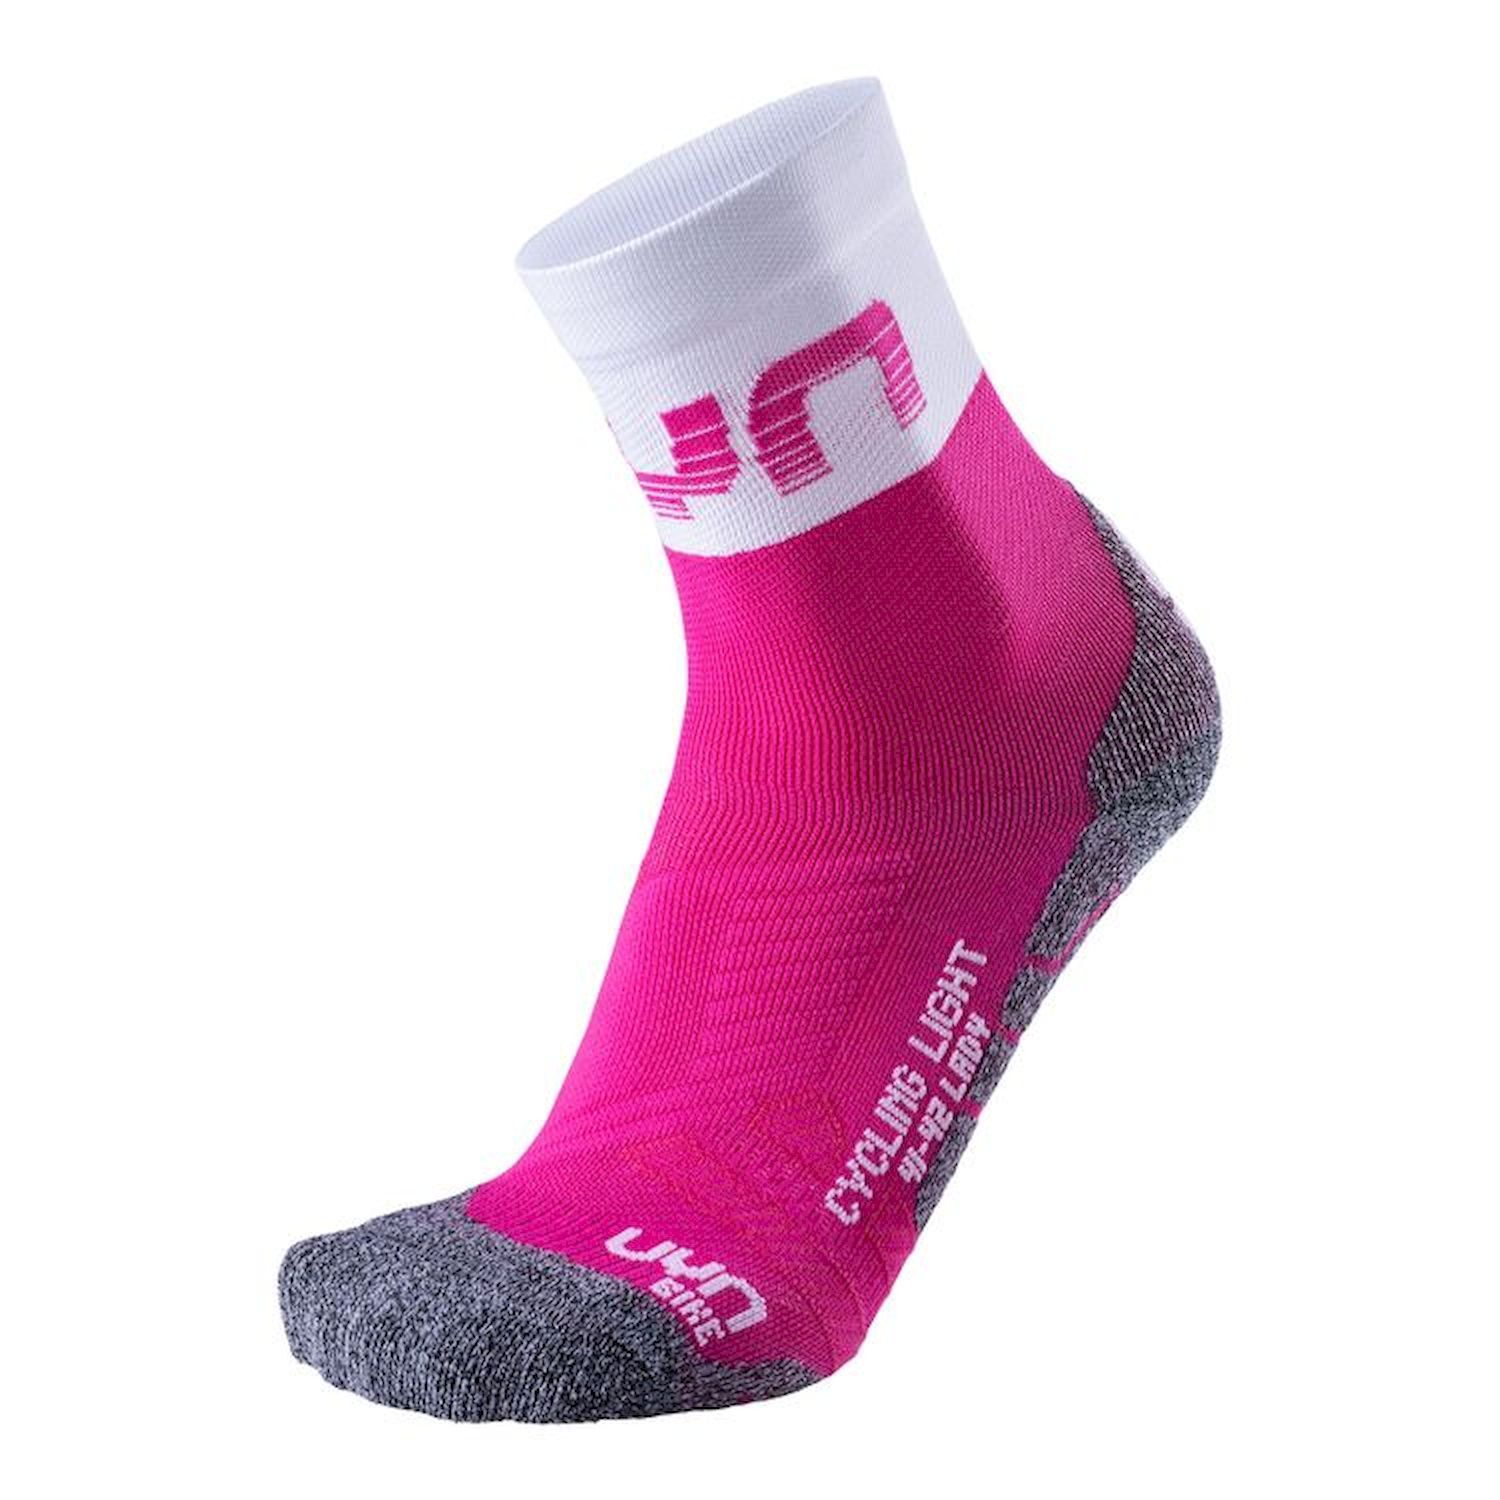 Uyn Cycling Light Socks - Fietssokken - Dames